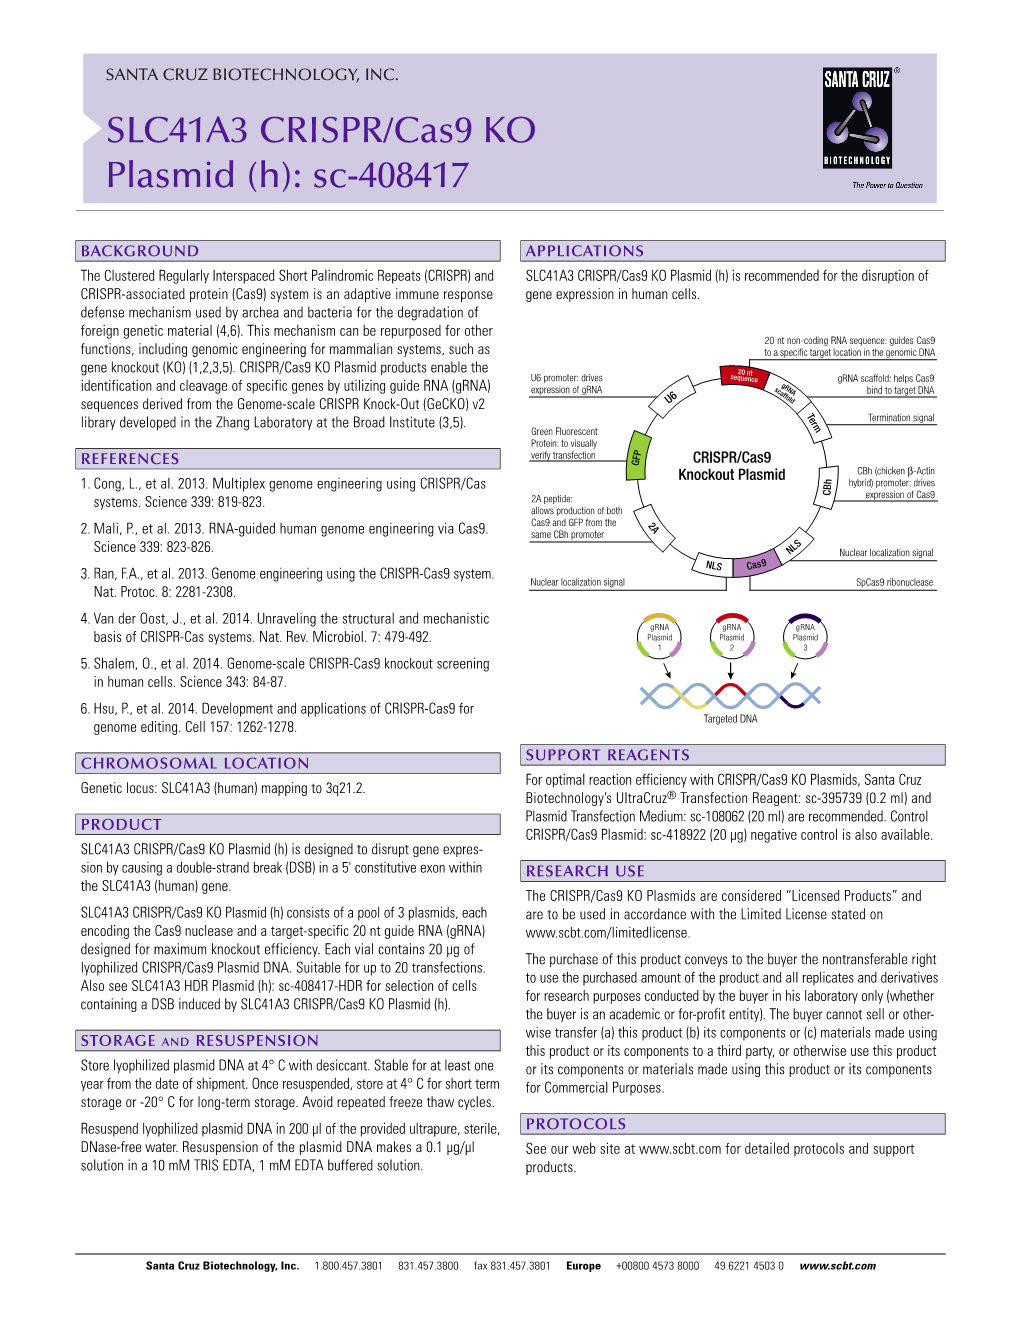 SLC41A3 CRISPR/Cas9 KO Plasmid (H): Sc-408417